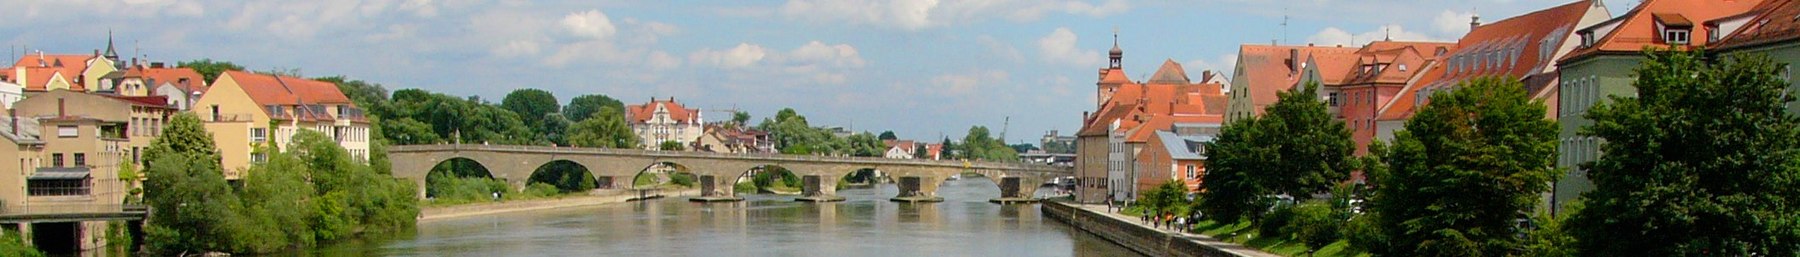 WV reklāmkarogs Augšpfalcas Donavā Regensburgā.jpg